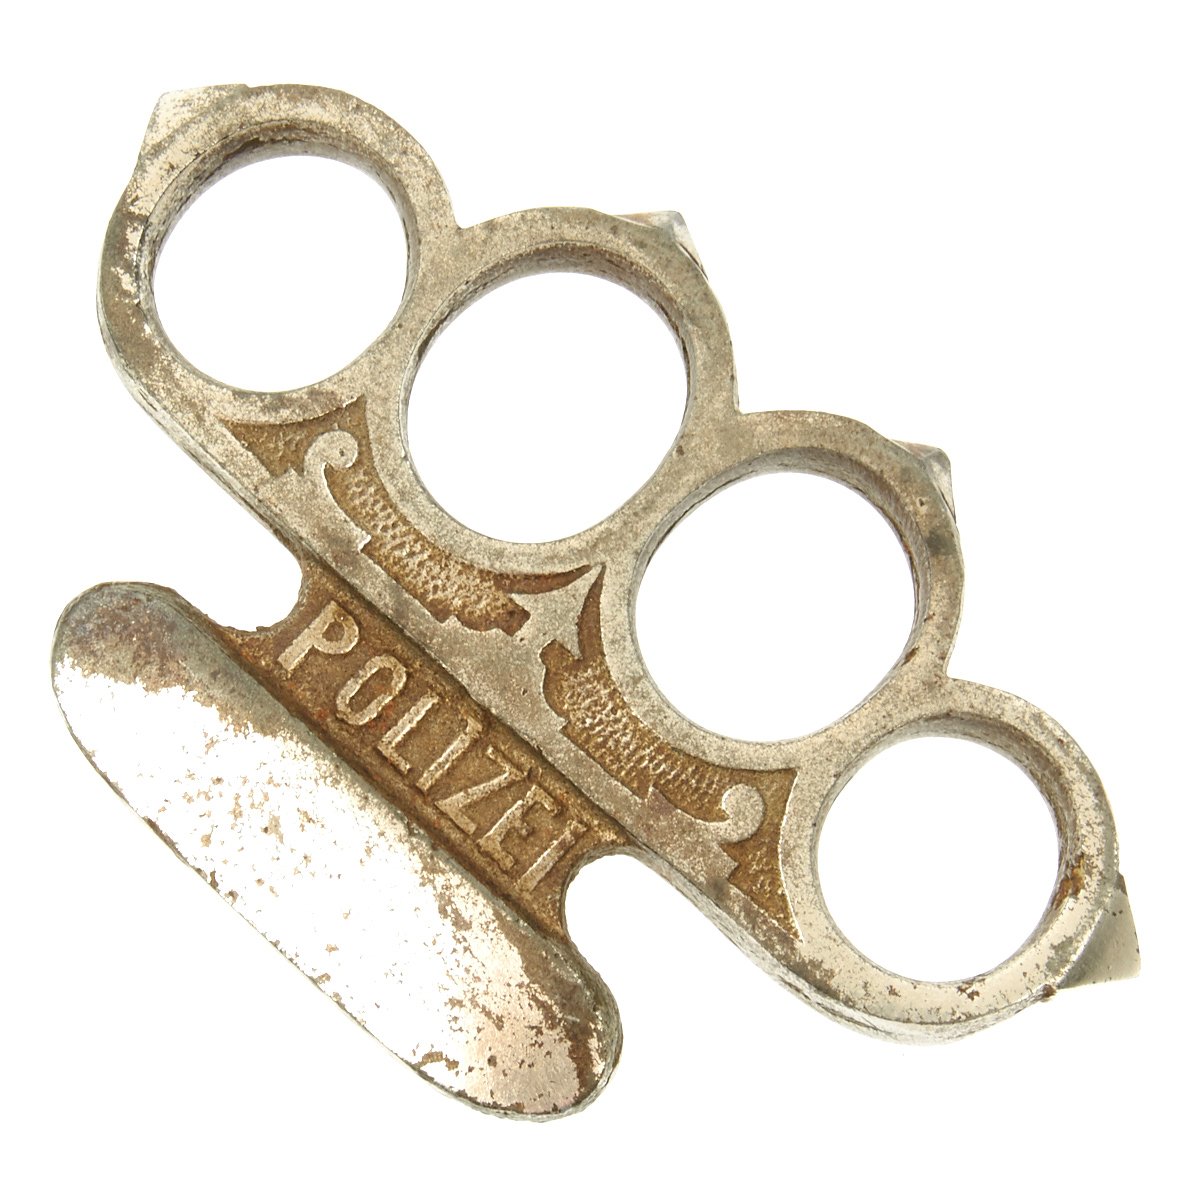 Origina German WWII Chemnitz Polizei Brass Knuckles